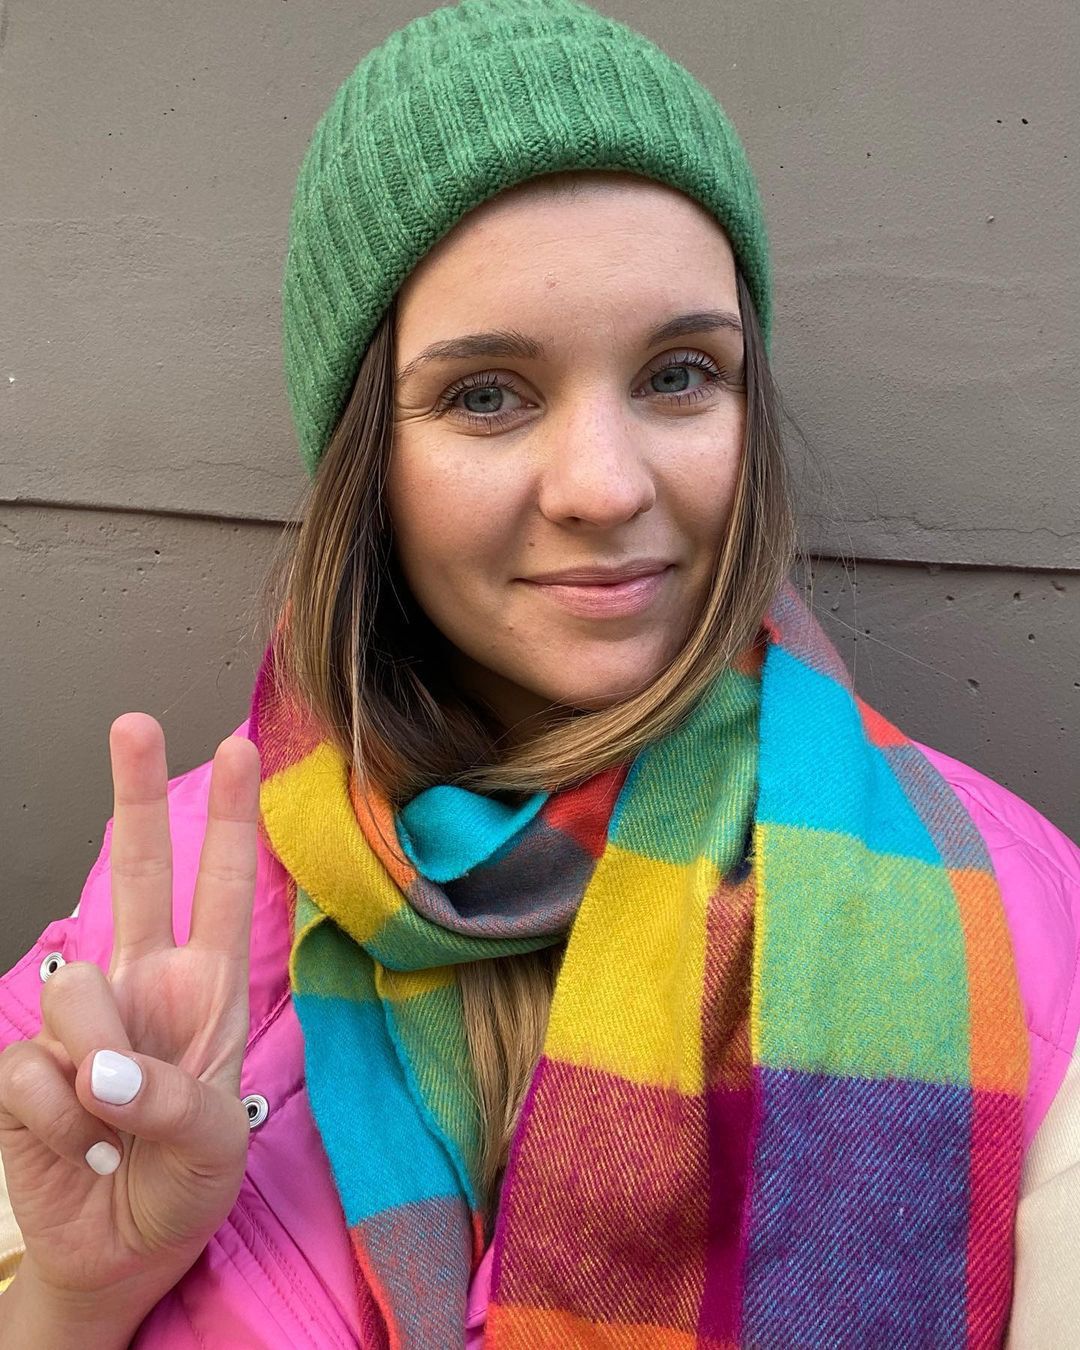 Barbara Kruk w kolorowym szaliku pokrytym wzorem kraty
Instagram/ciaobasia